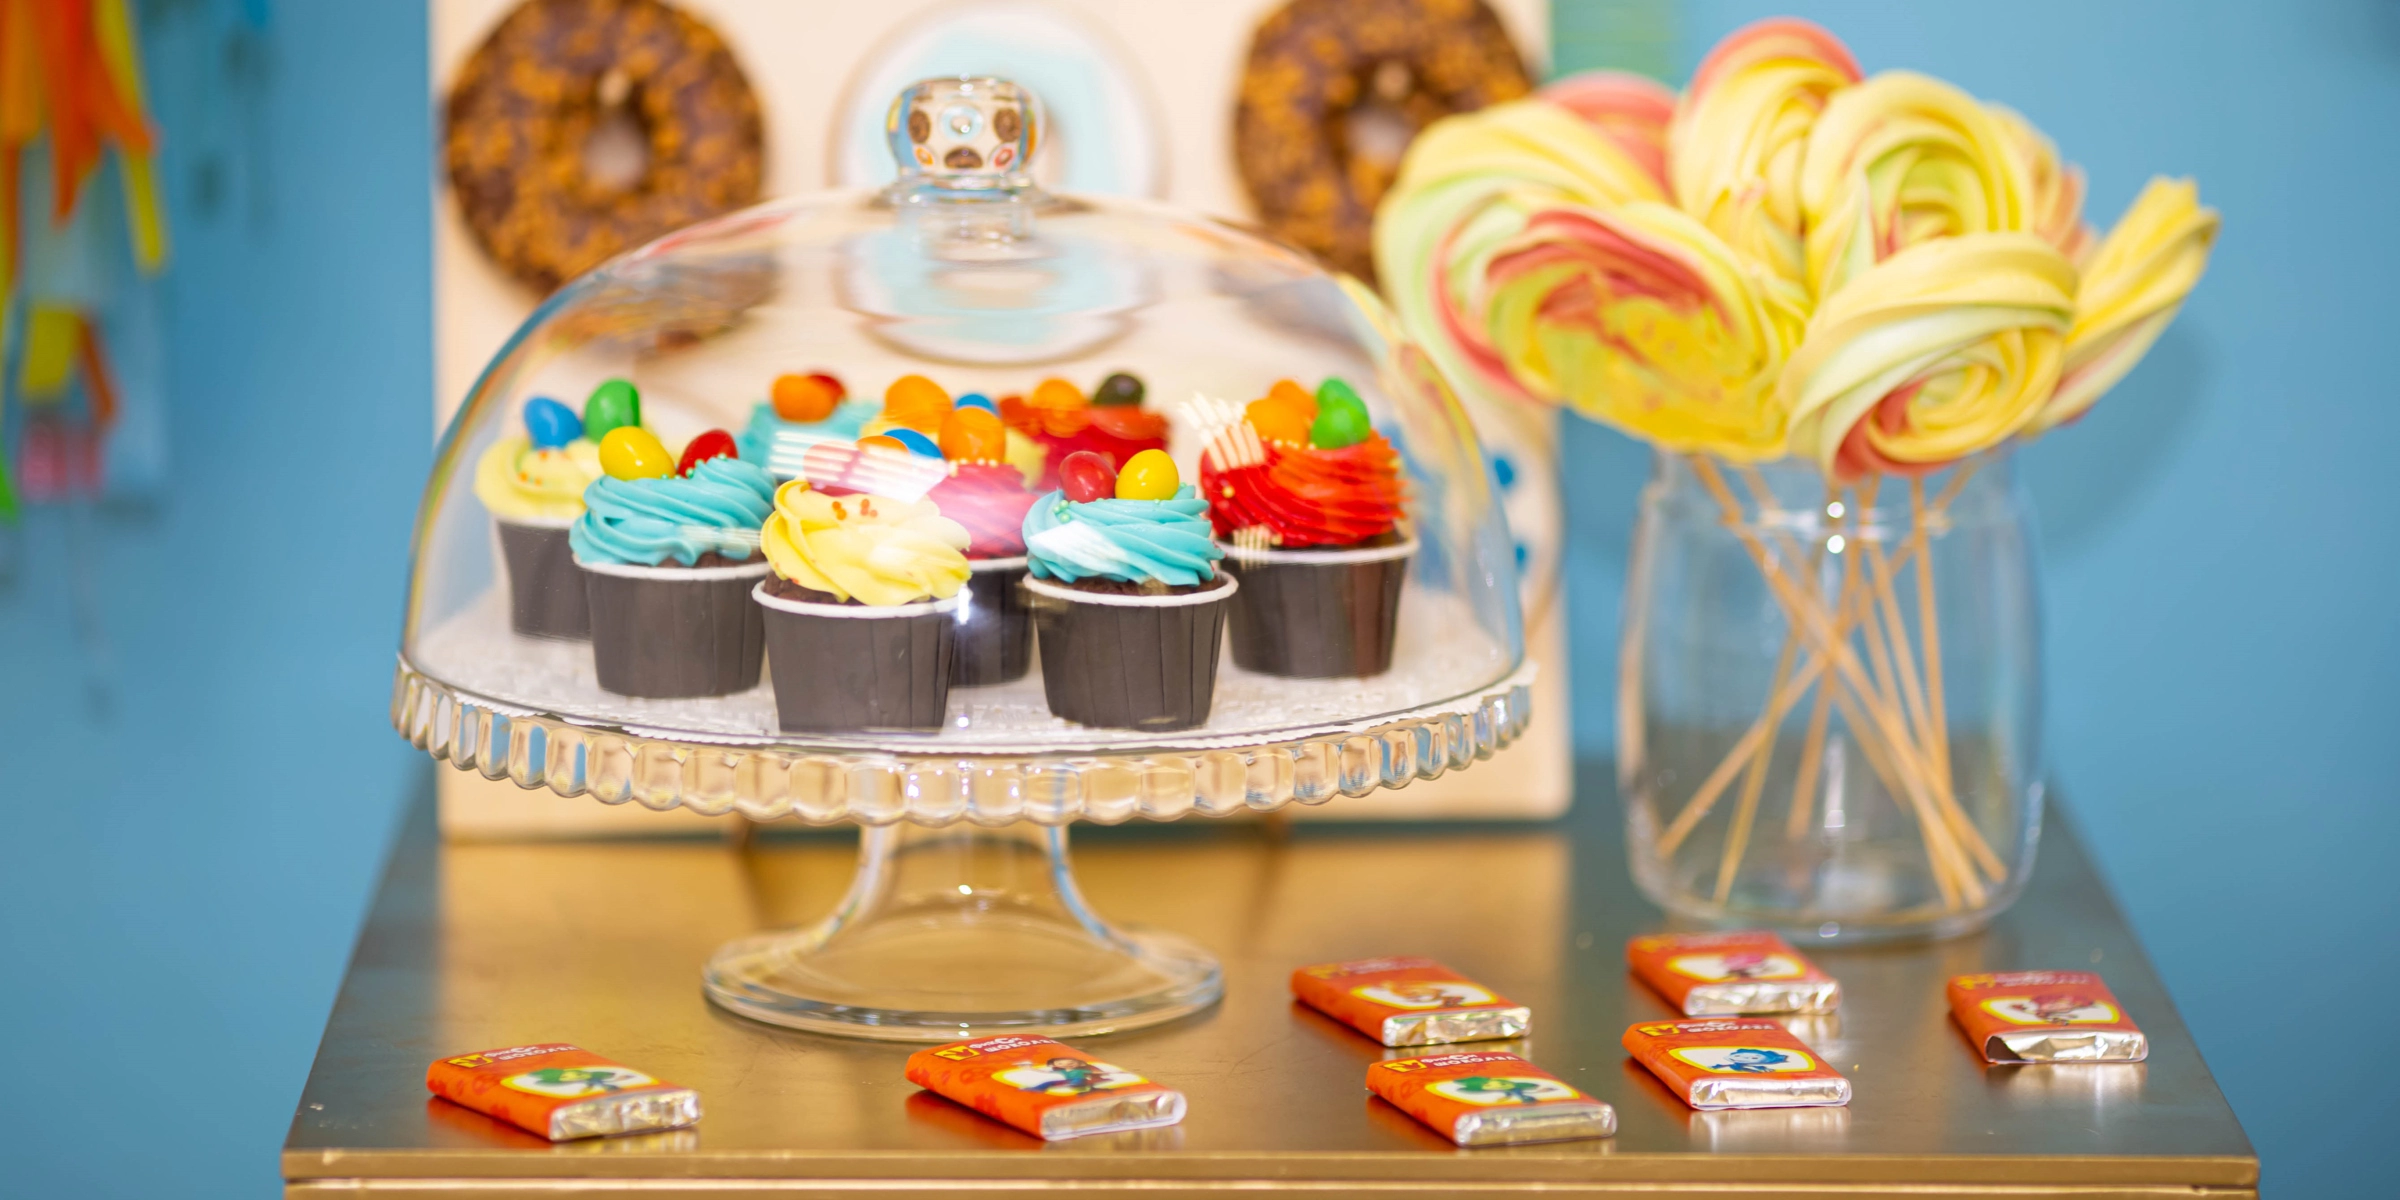 Кенди Бар и сладкие столы на детский праздник фото 3